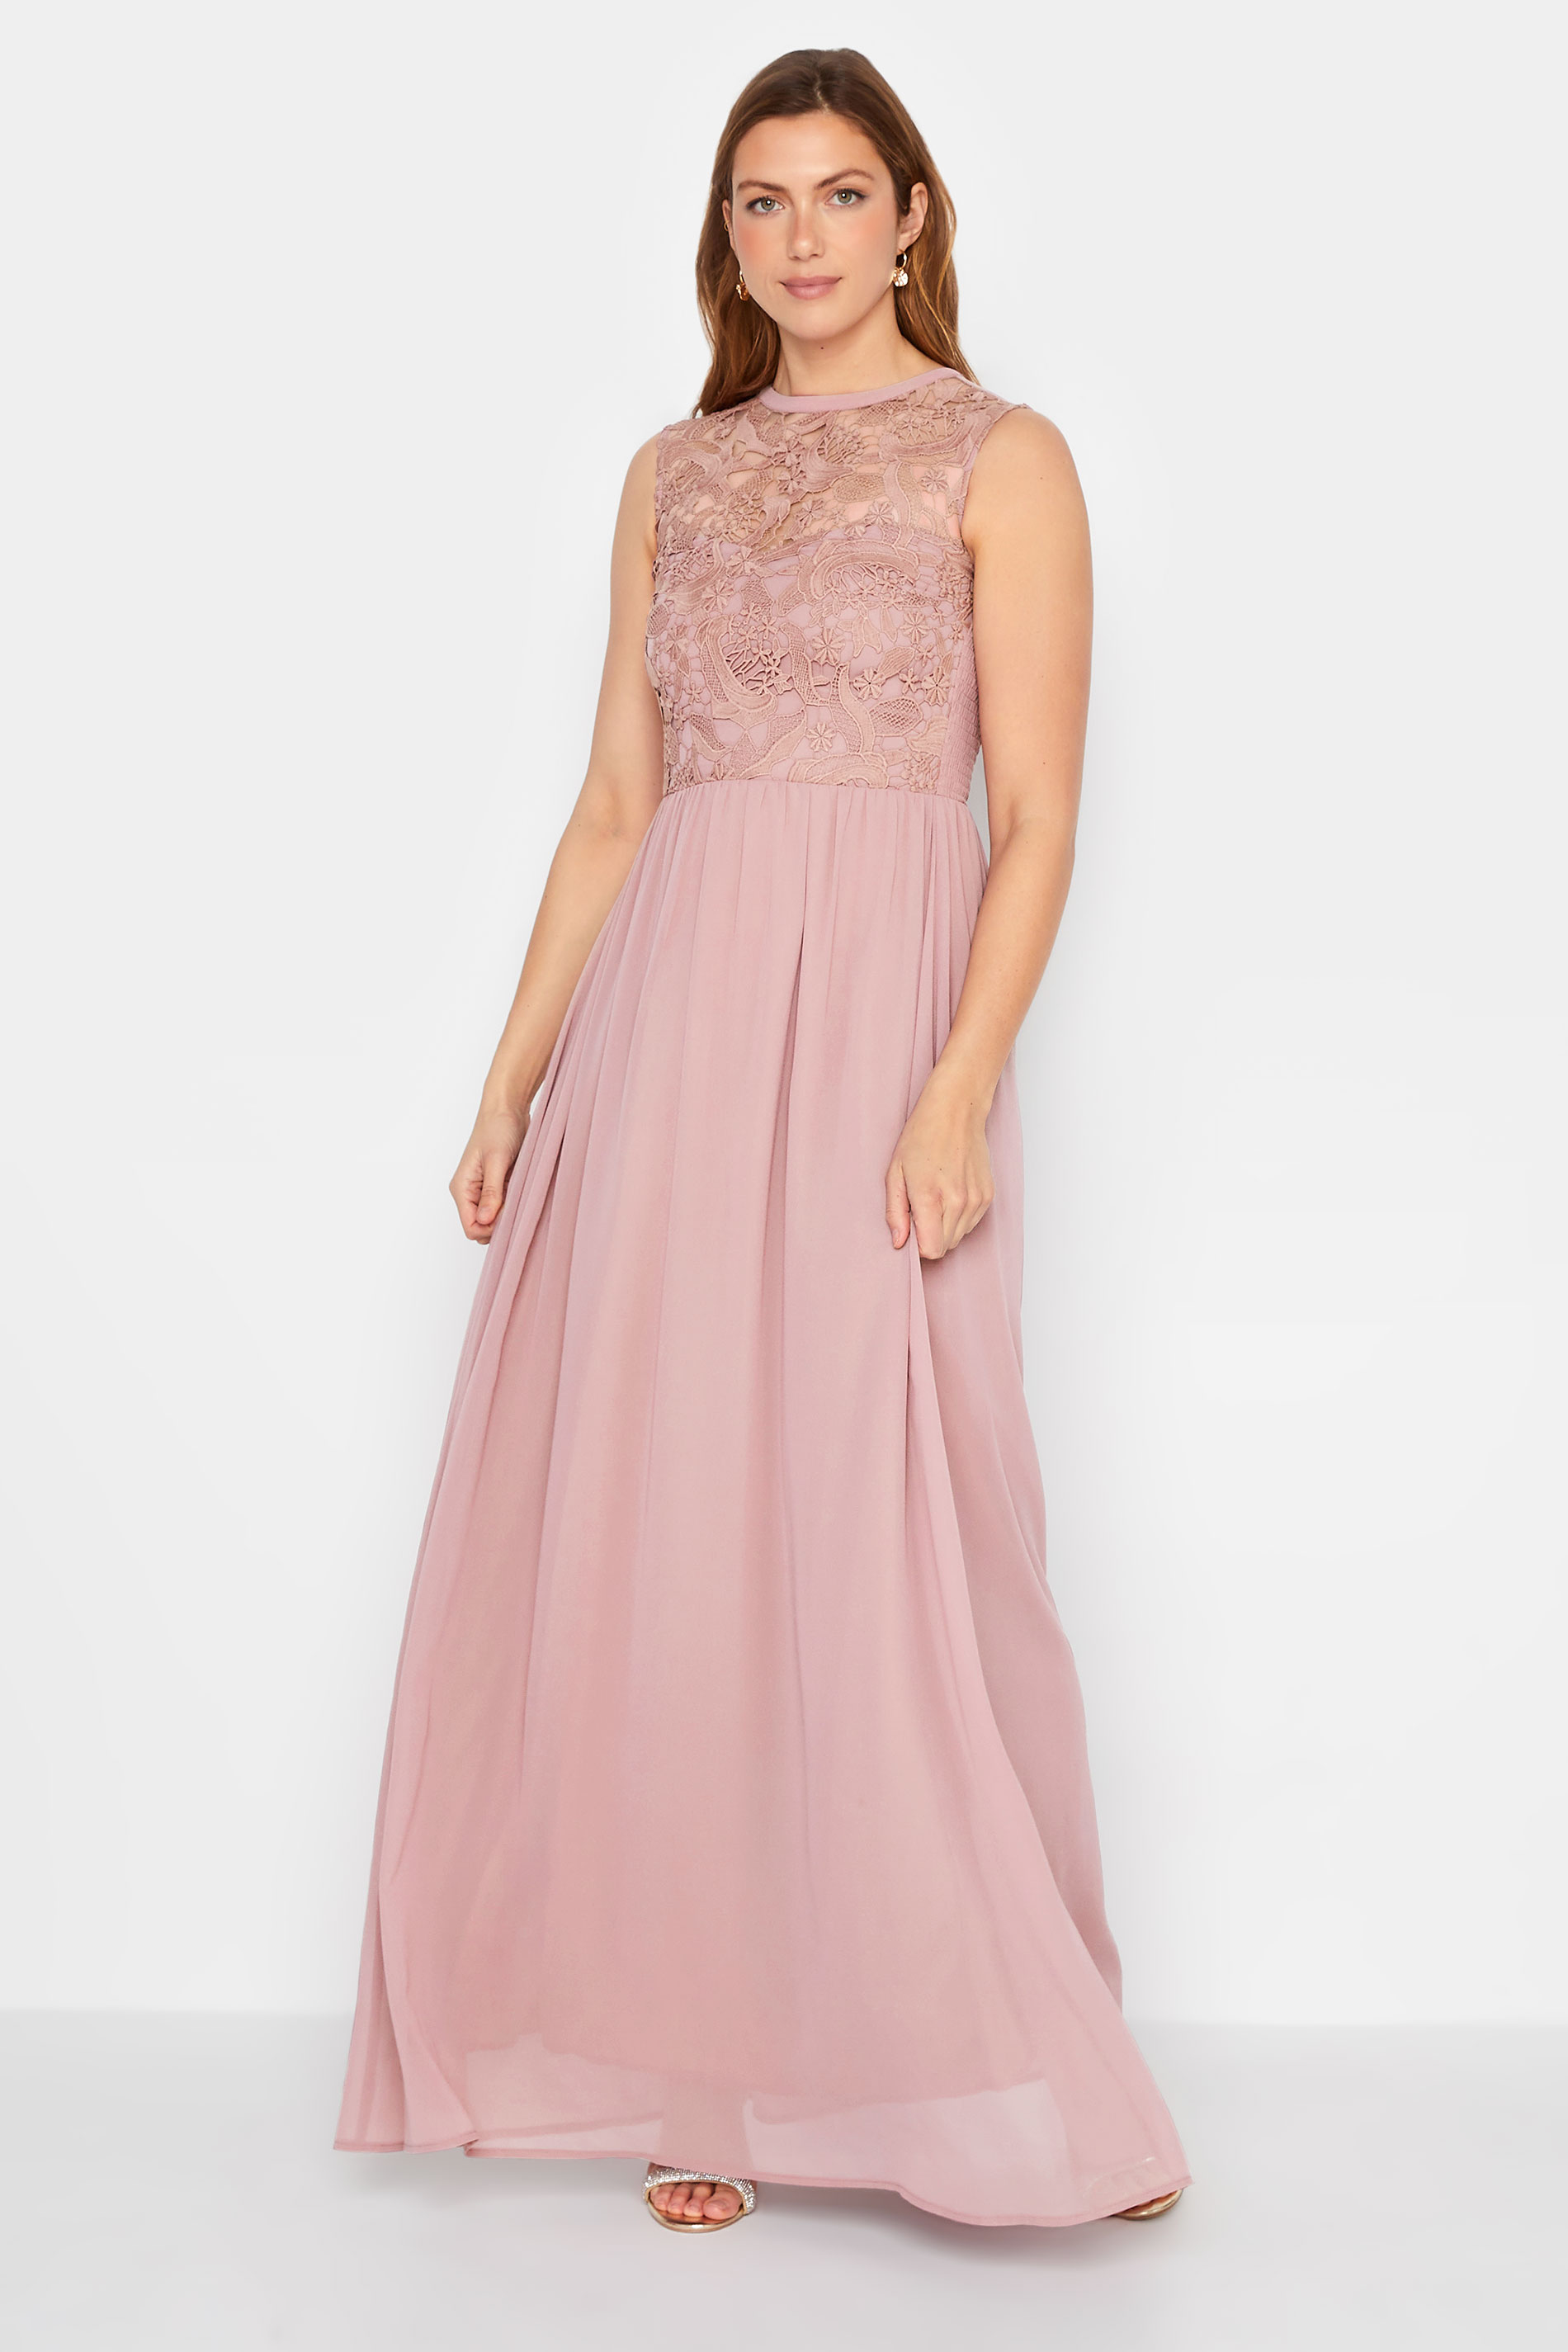 LTS Tall Women's Blush Pink Lace Chiffon Maxi Dress | Long Tall Sally  2